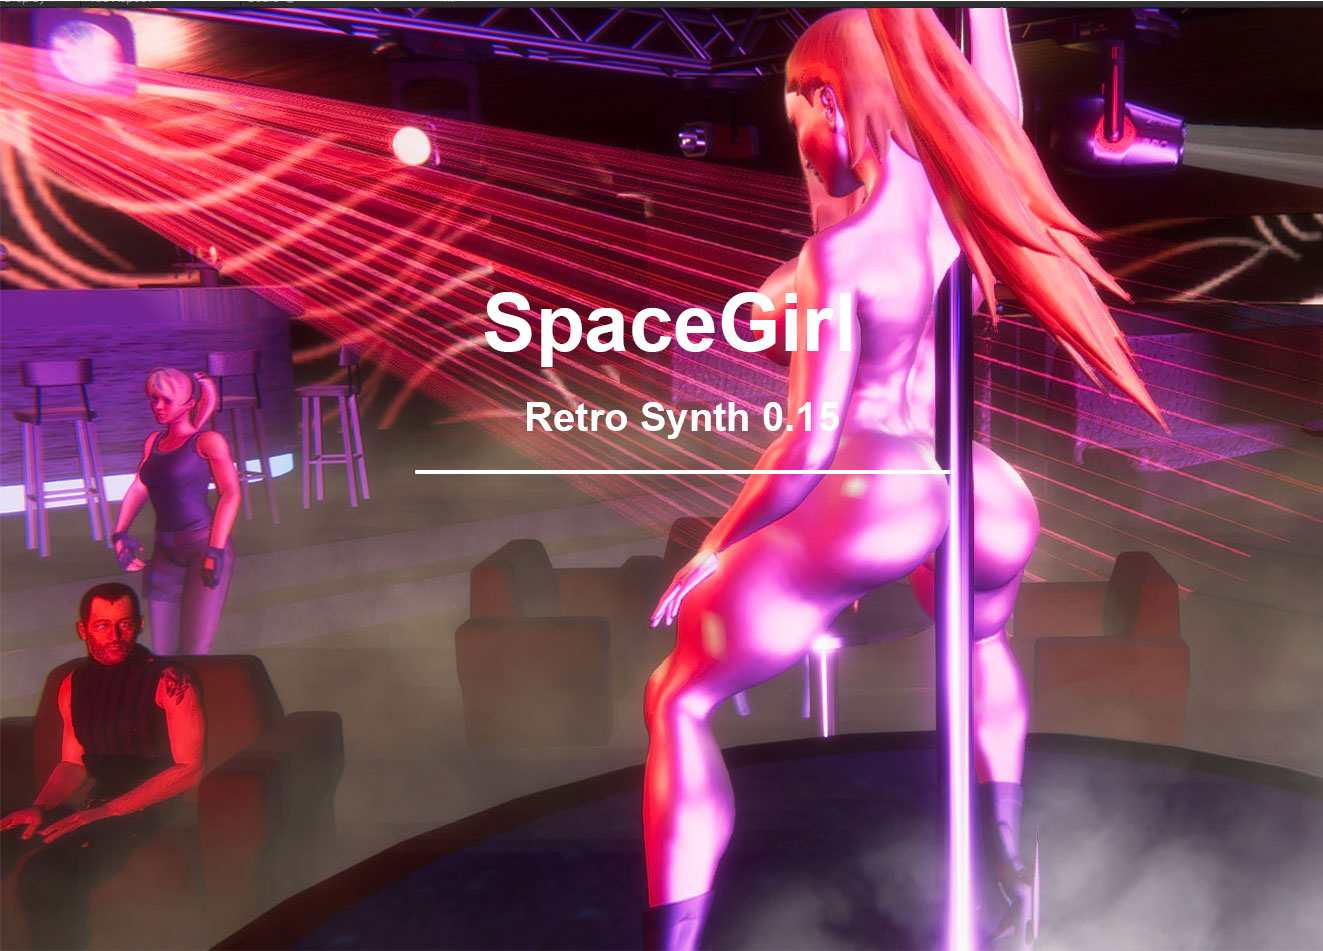 SpaceGirl Retro Synth